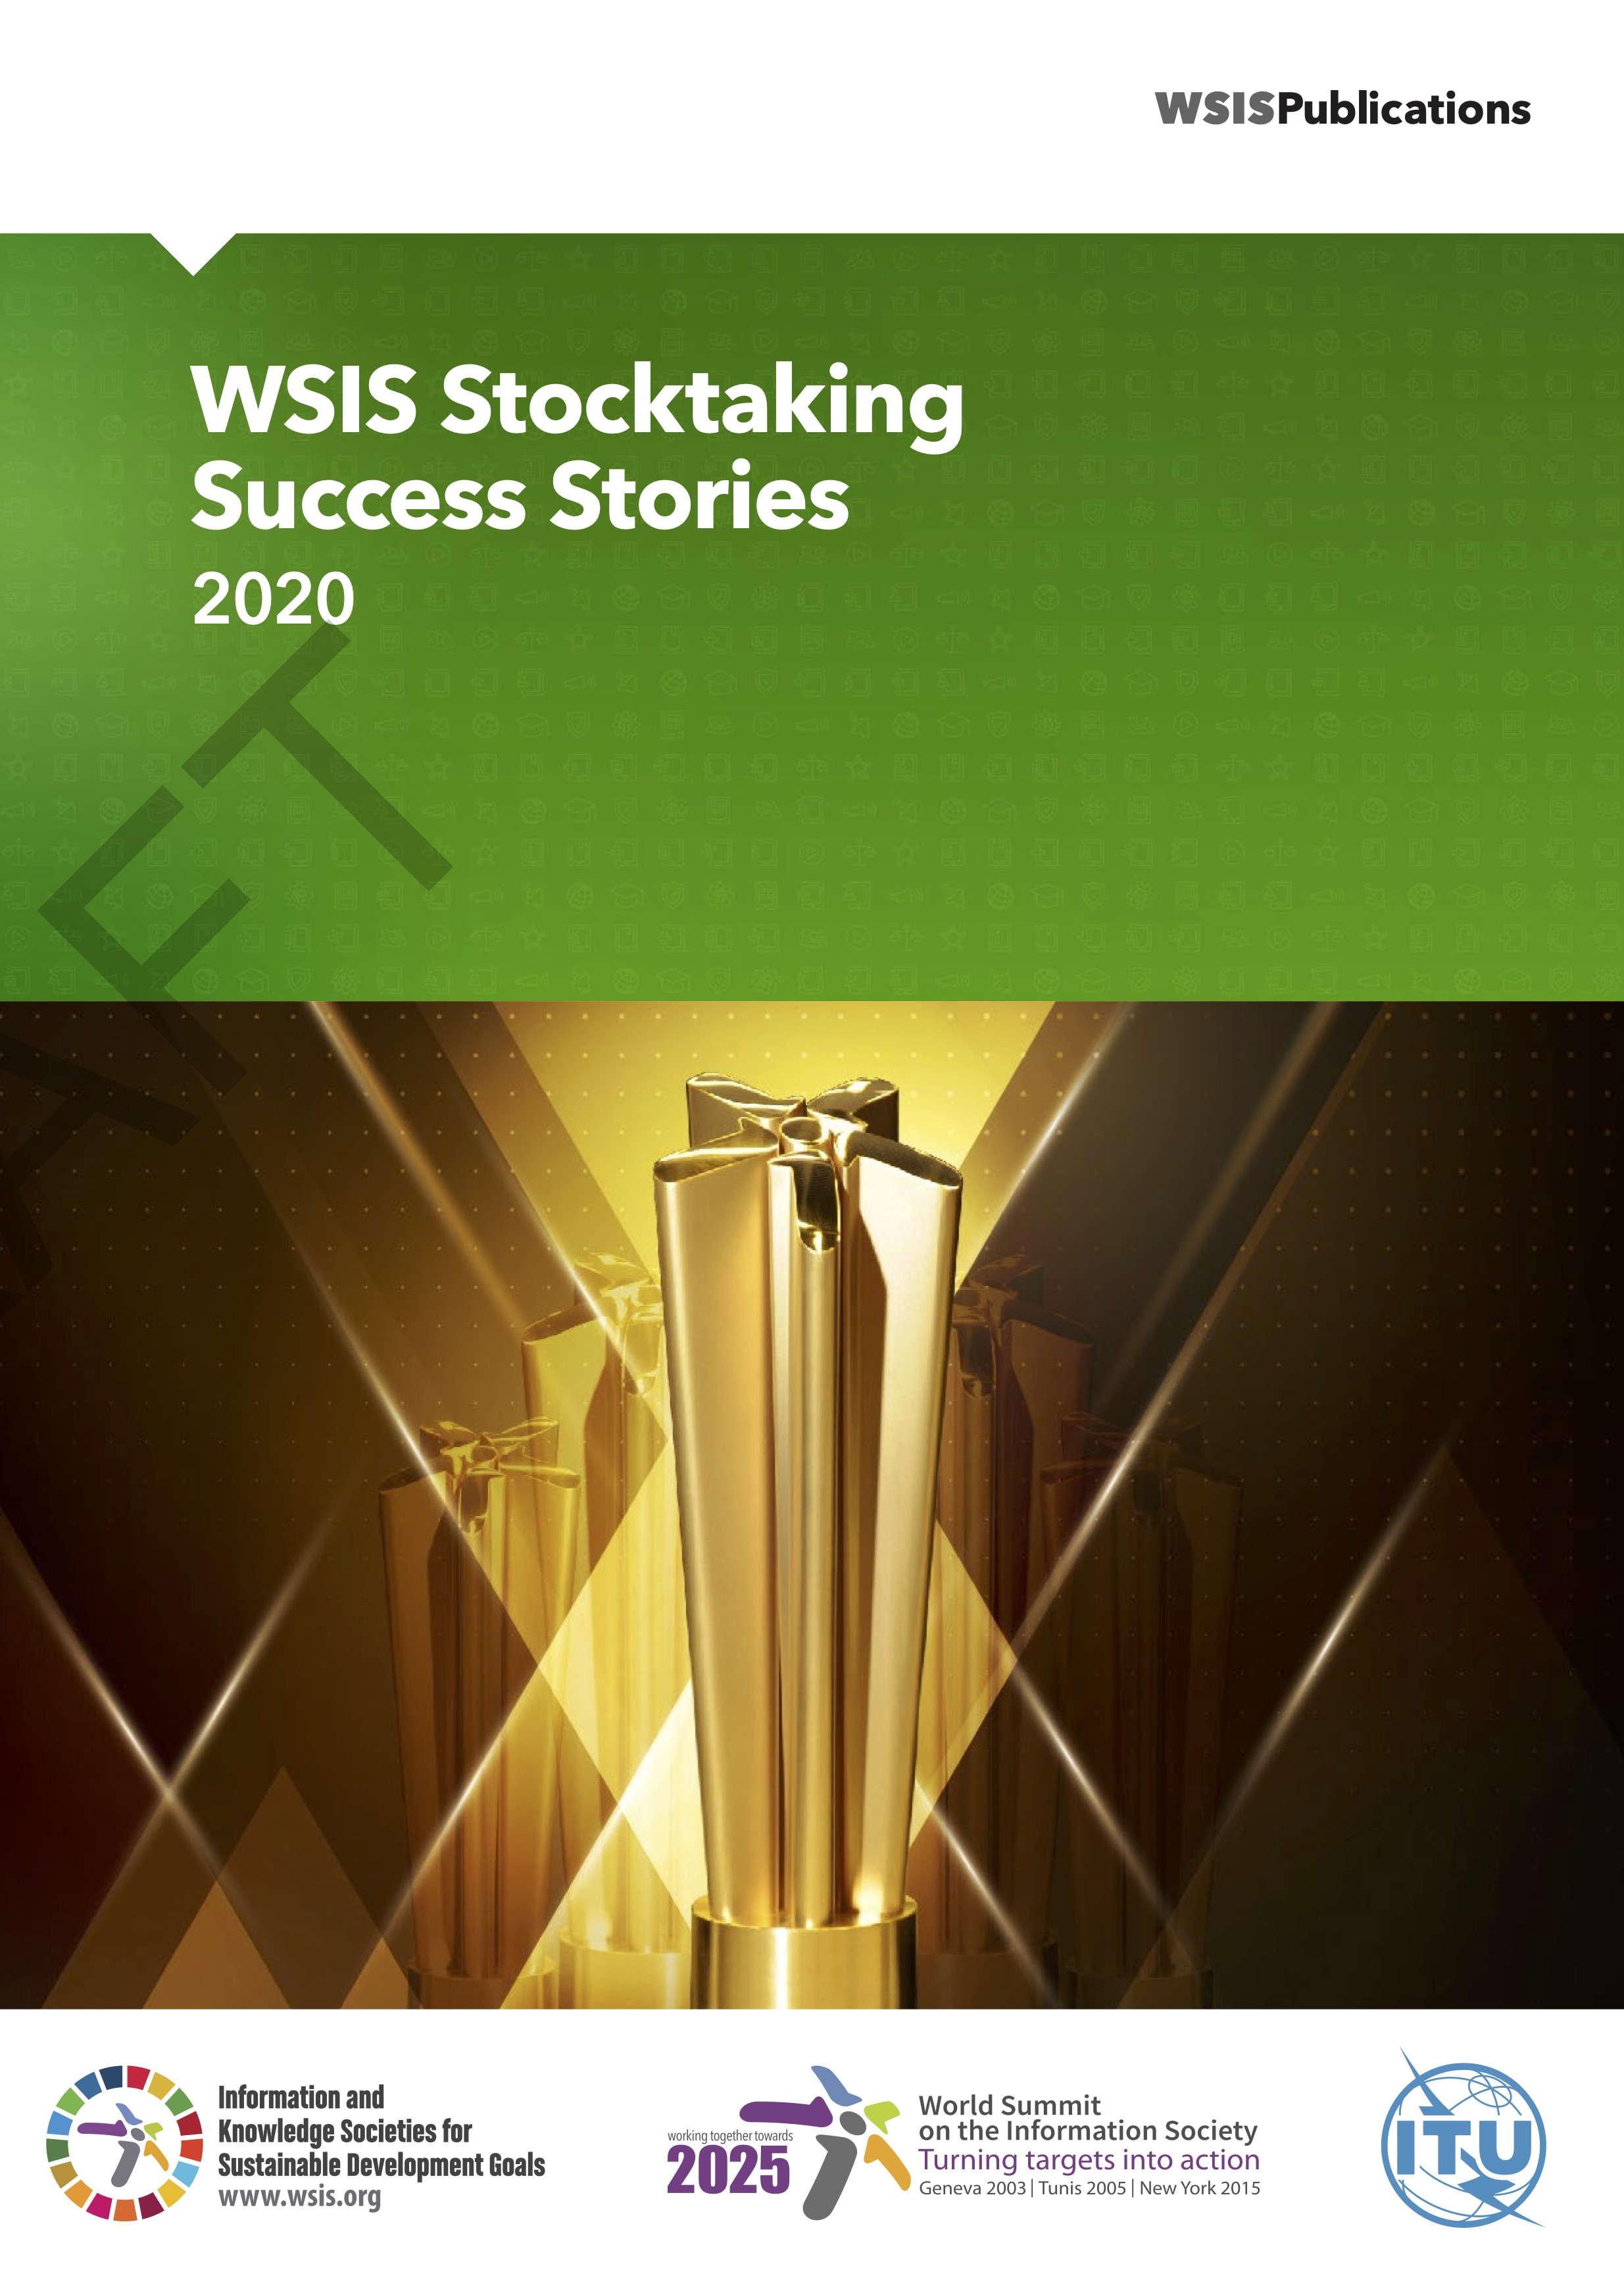 WSIS Stocktaking: Success Stories 2020